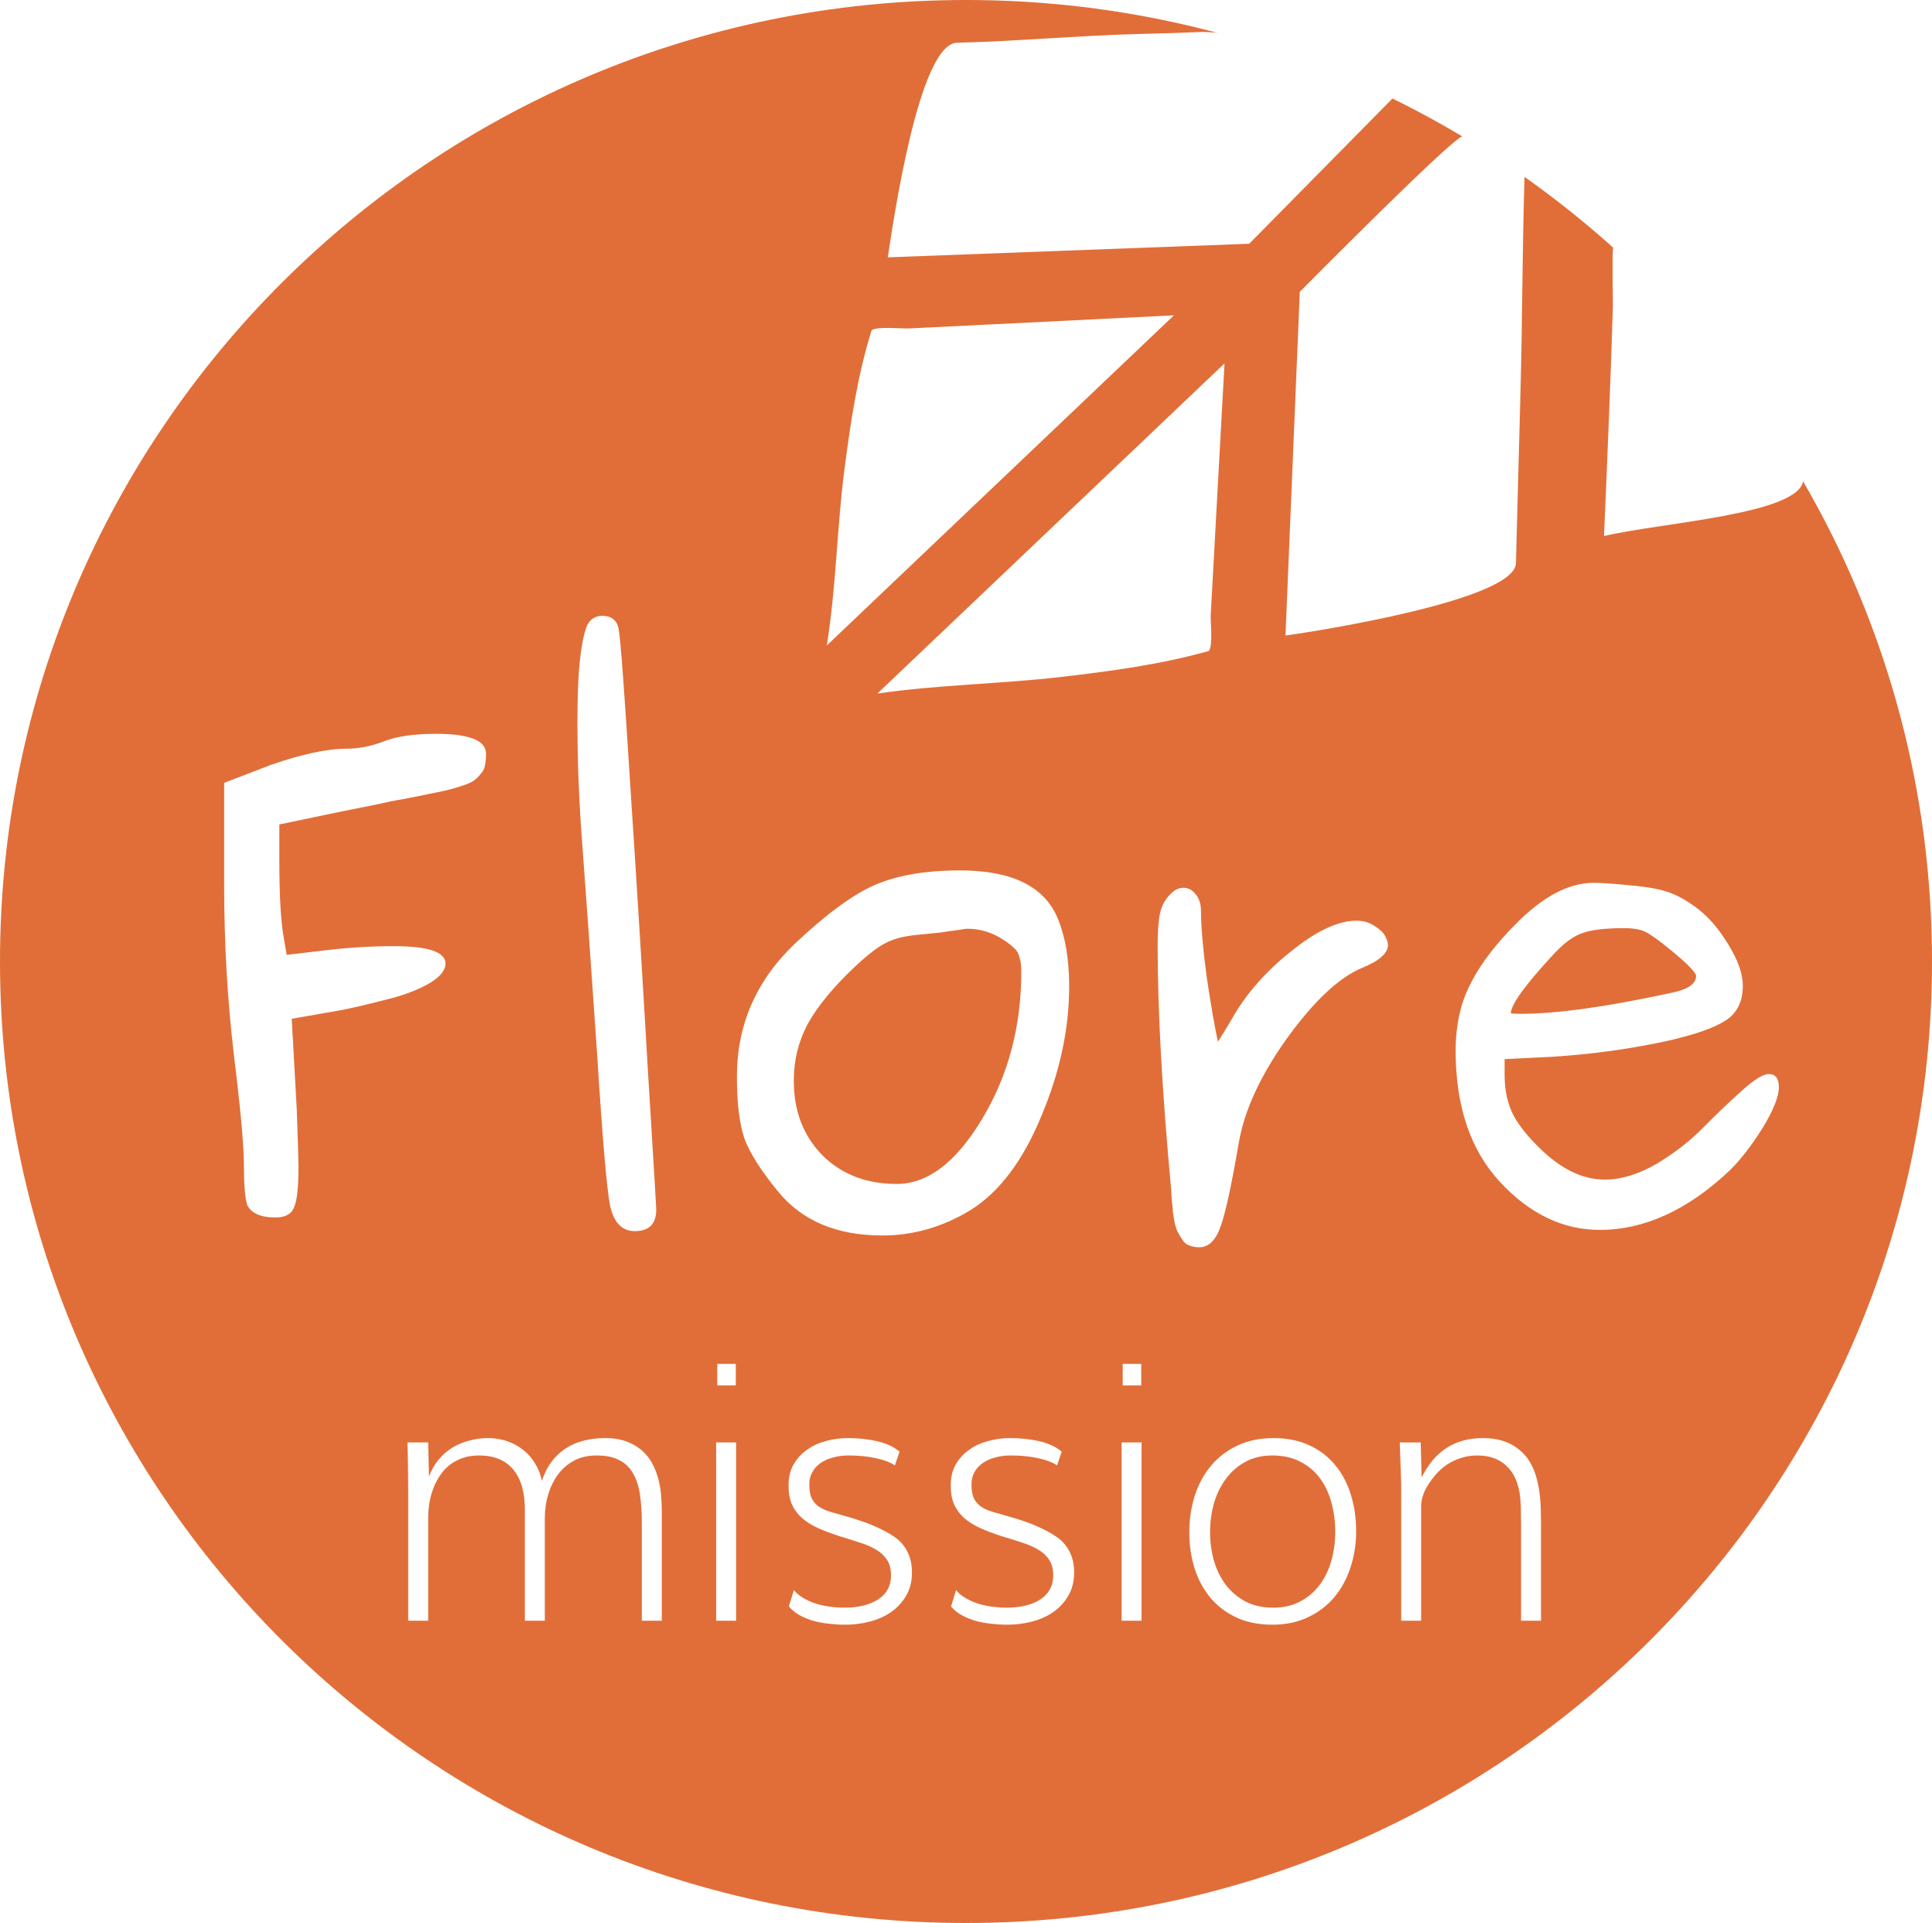 Missions Flore : les plantes exotiques qui s'échappent